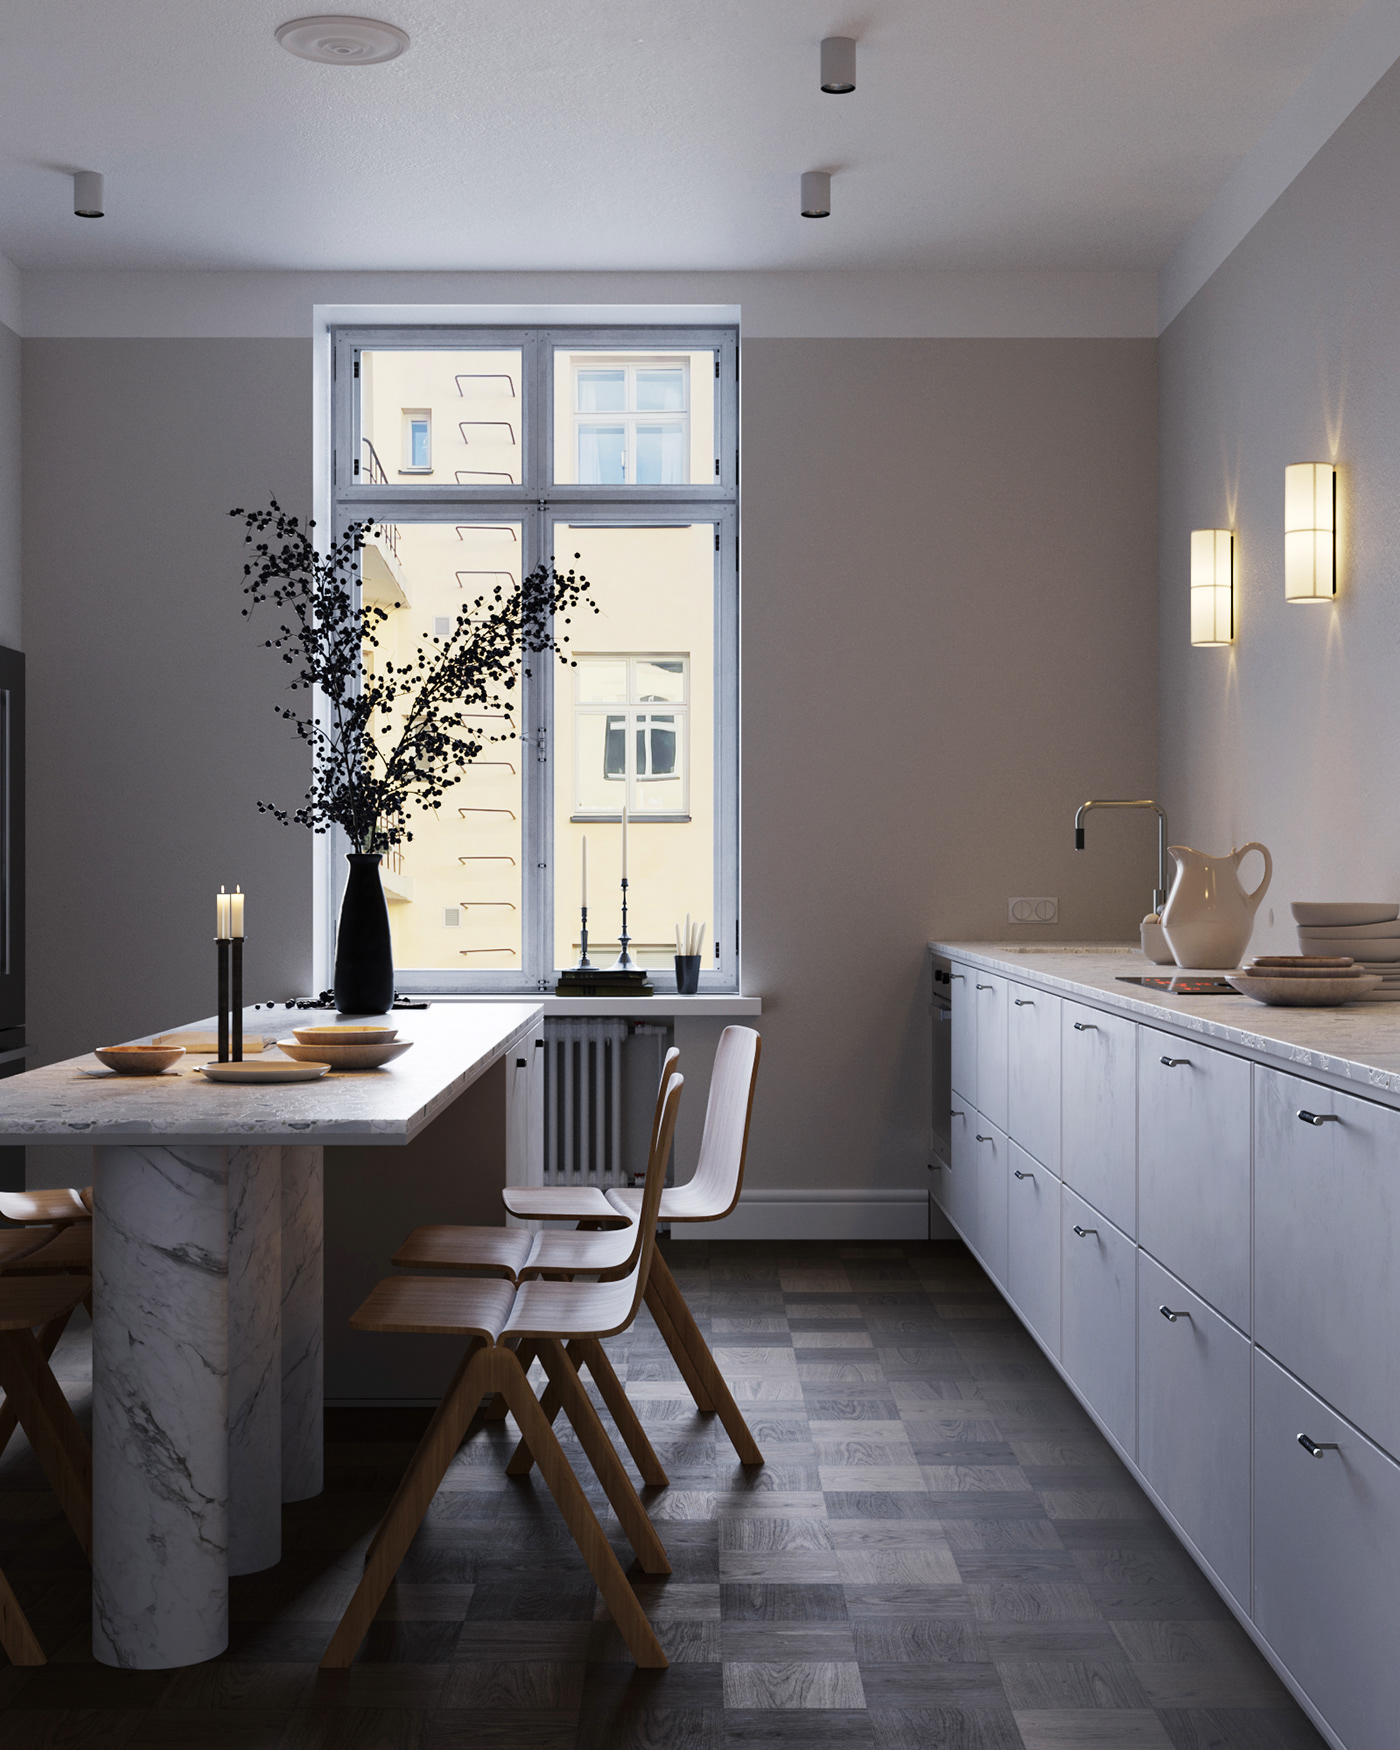 3ds max archviz interior design  kitchen design Minimalism minimalist Render Scandinavian visualization